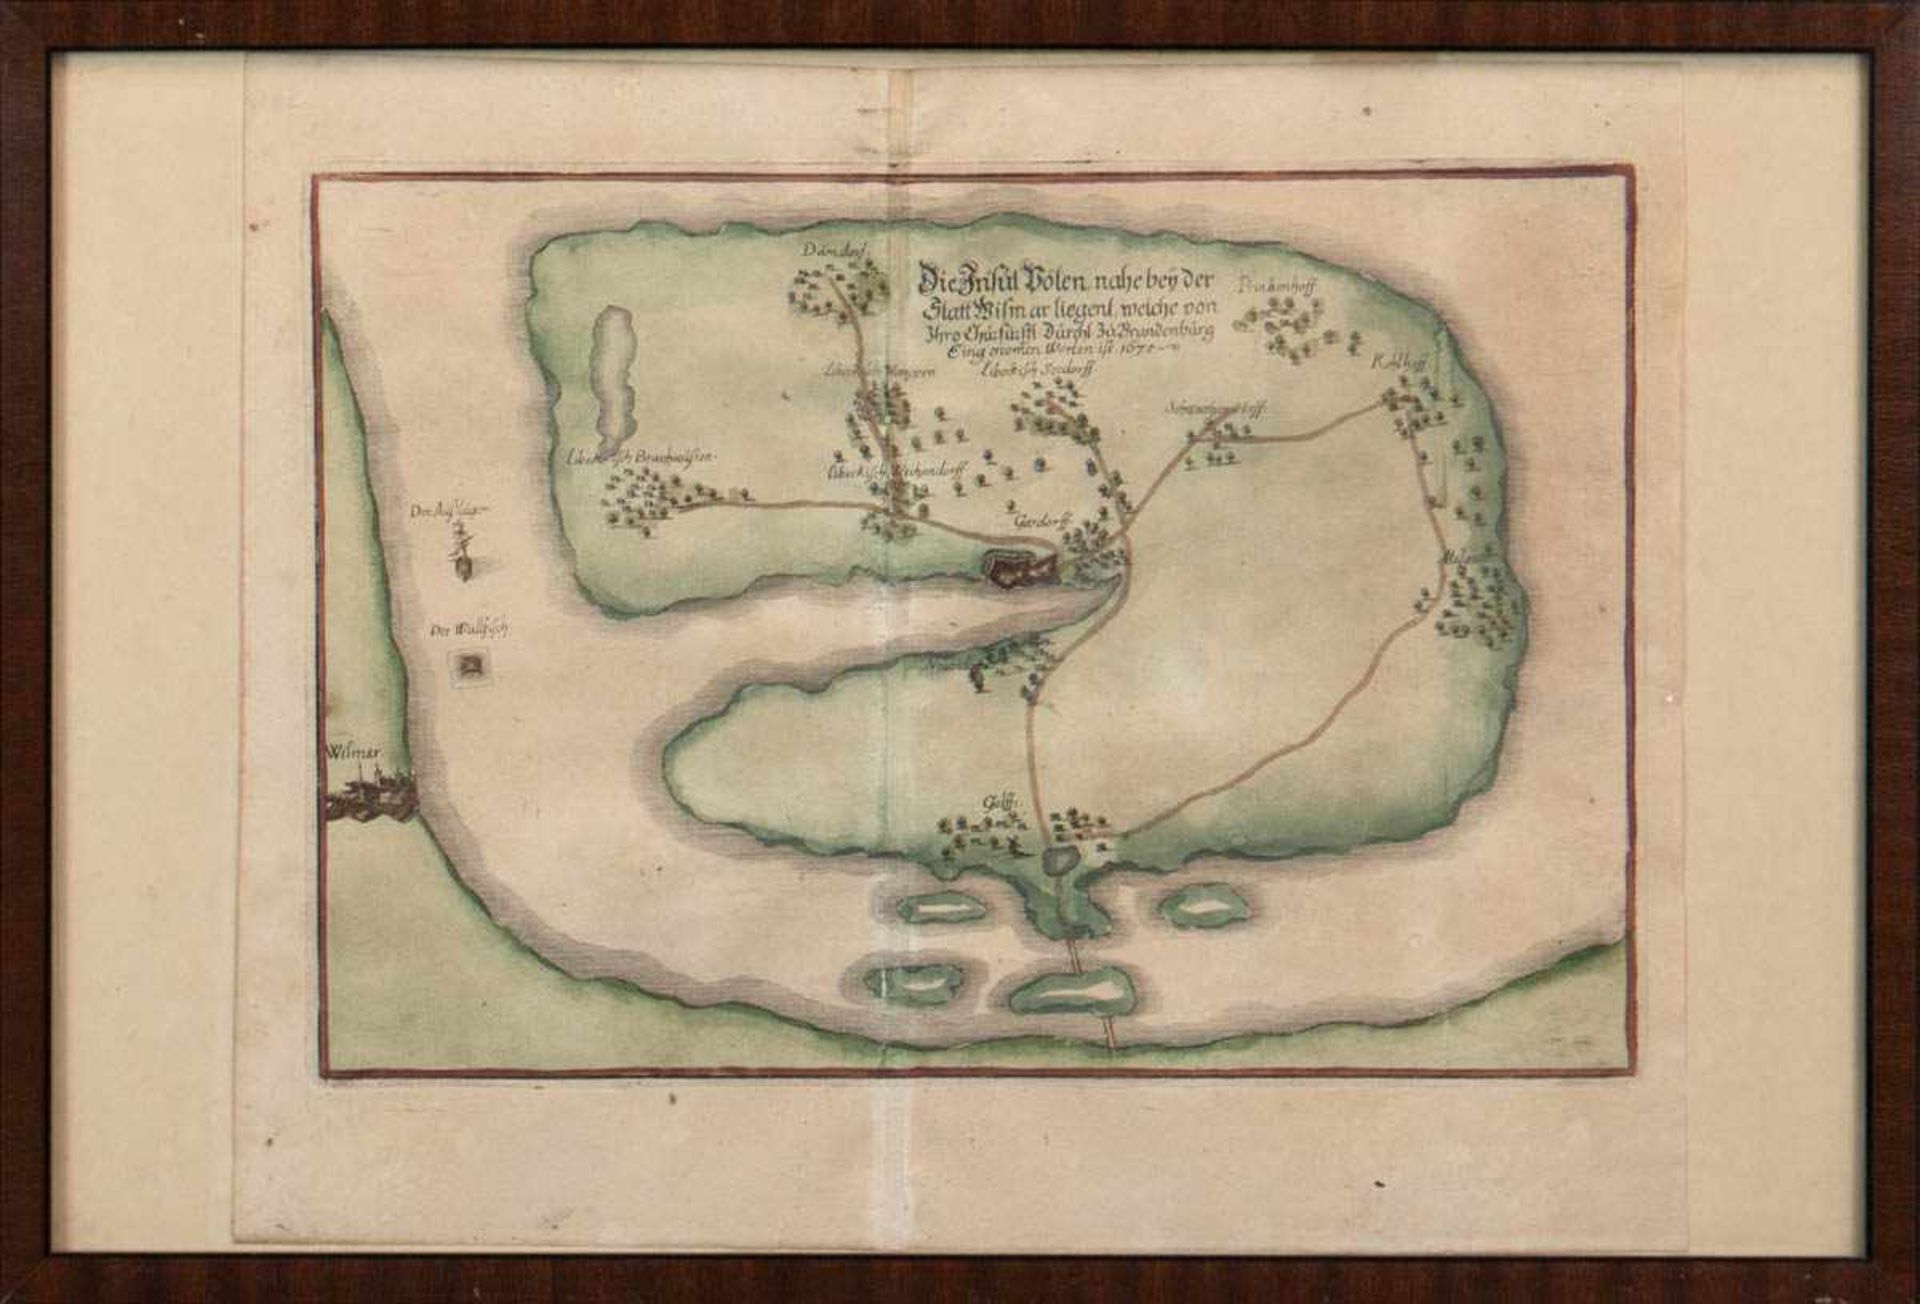 Landkarte "Insel Poel - Die Insul Pölen nahe bey der Statt Wismar liegent, welche von Ihro